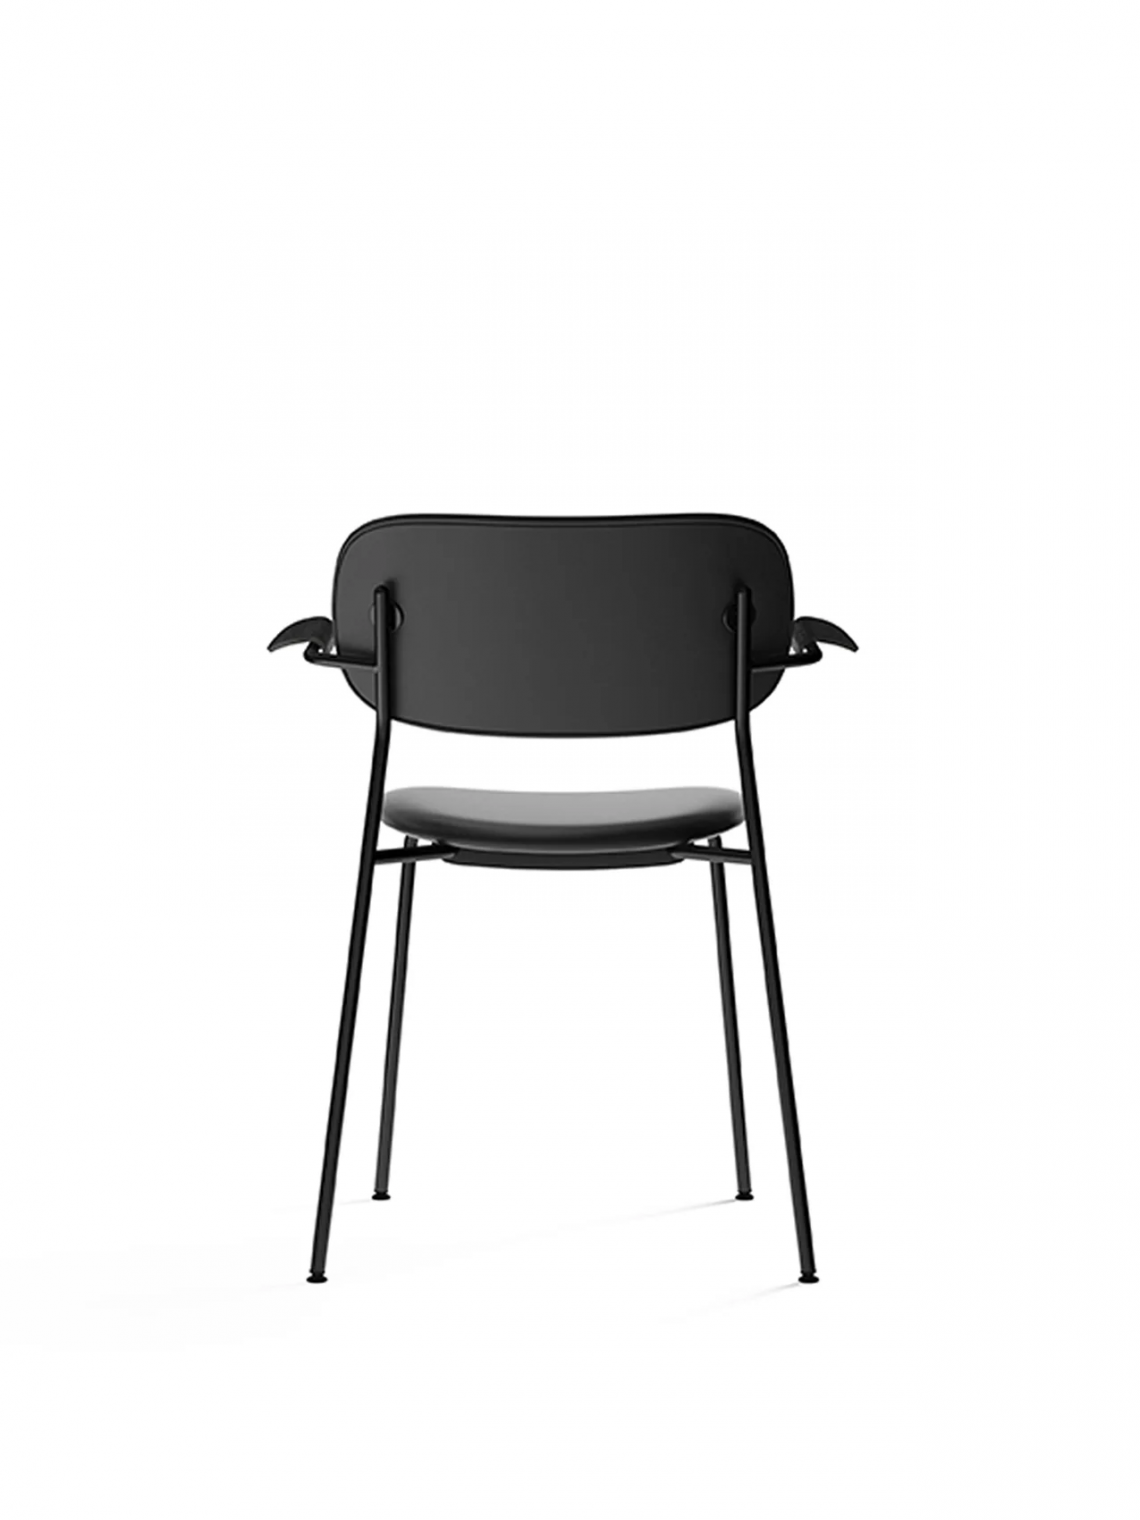 Co upholstered seat with armrest, Black餐椅细节图2